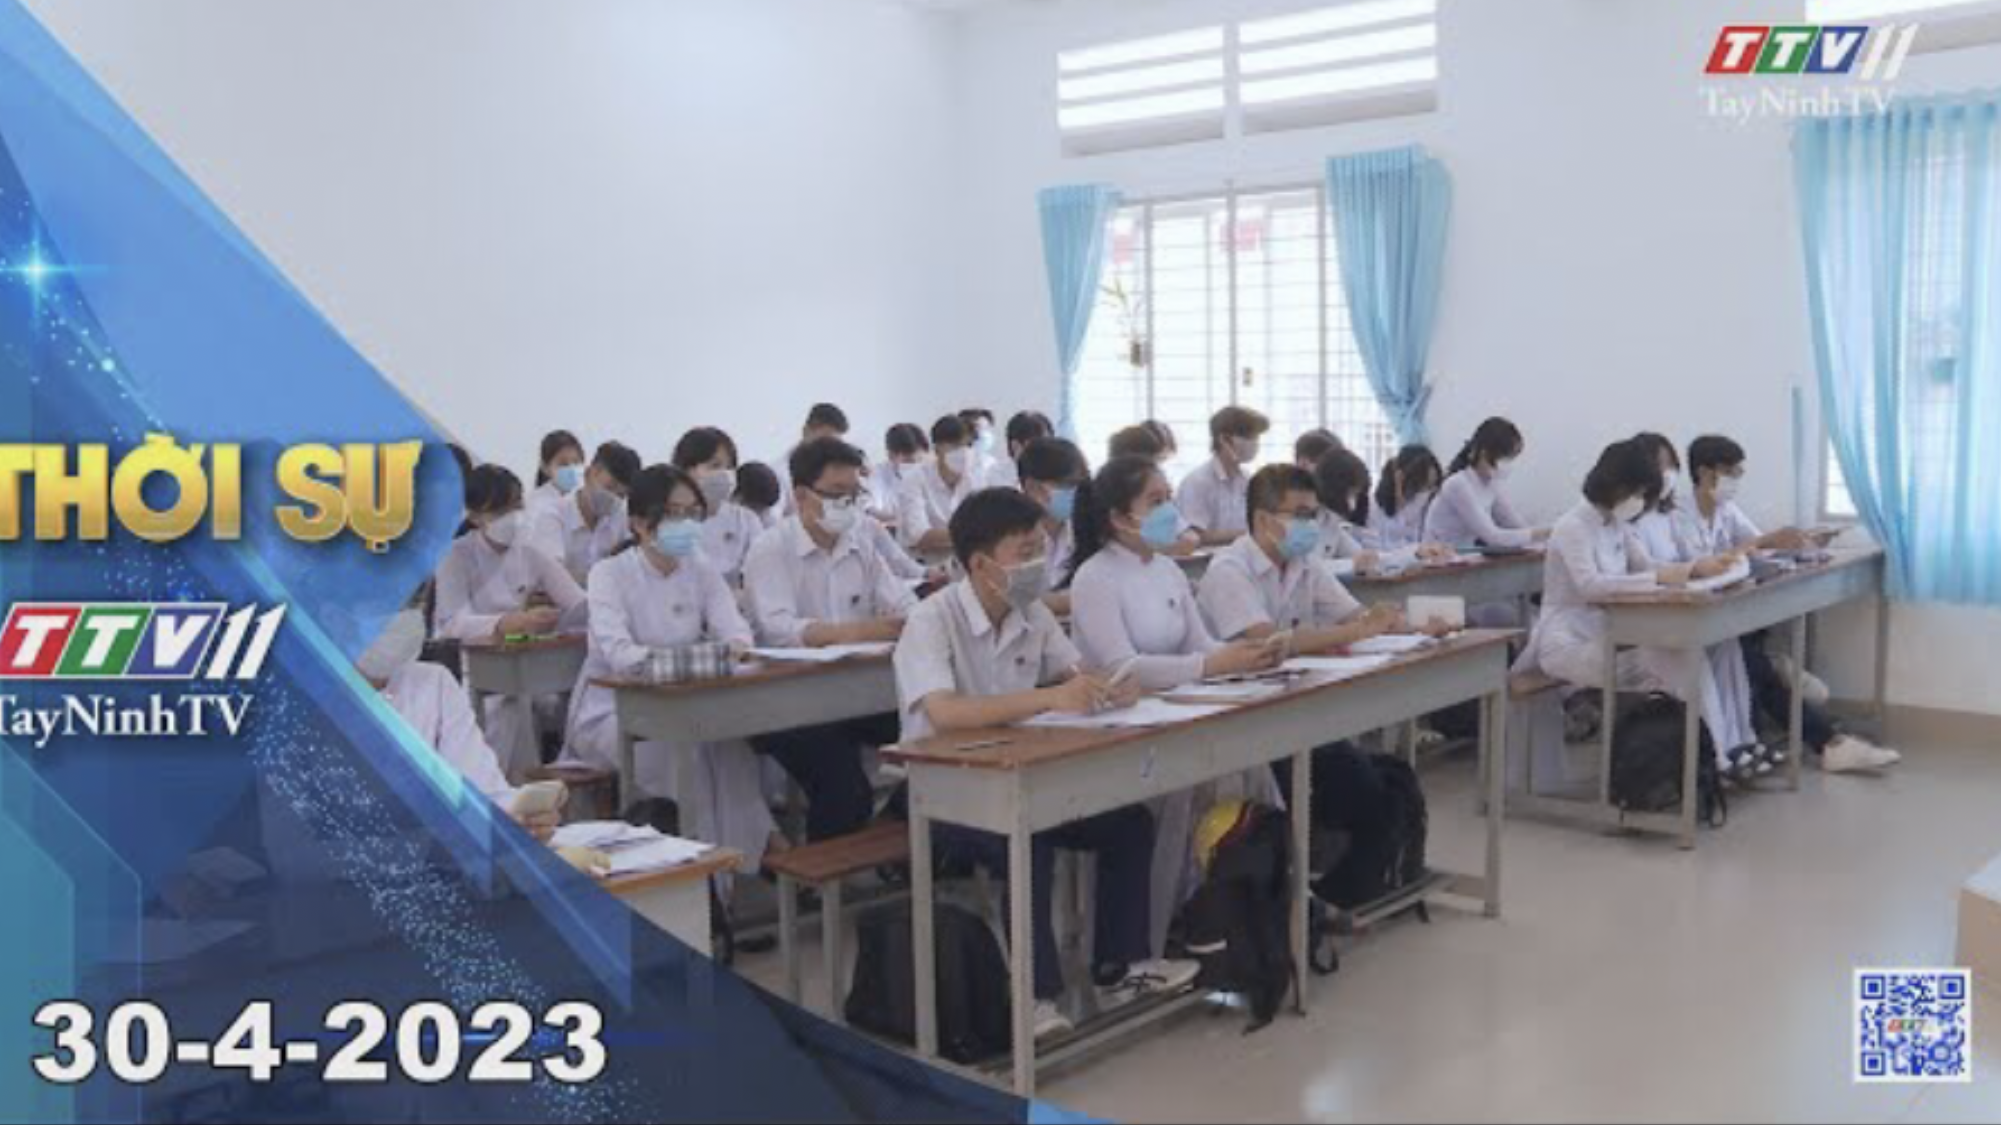 Thời sự Tây Ninh 30-4-2023 | Tin tức hôm nay | TayNinhTV